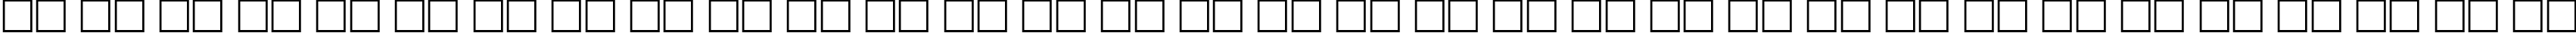 Пример написания русского алфавита шрифтом Andes